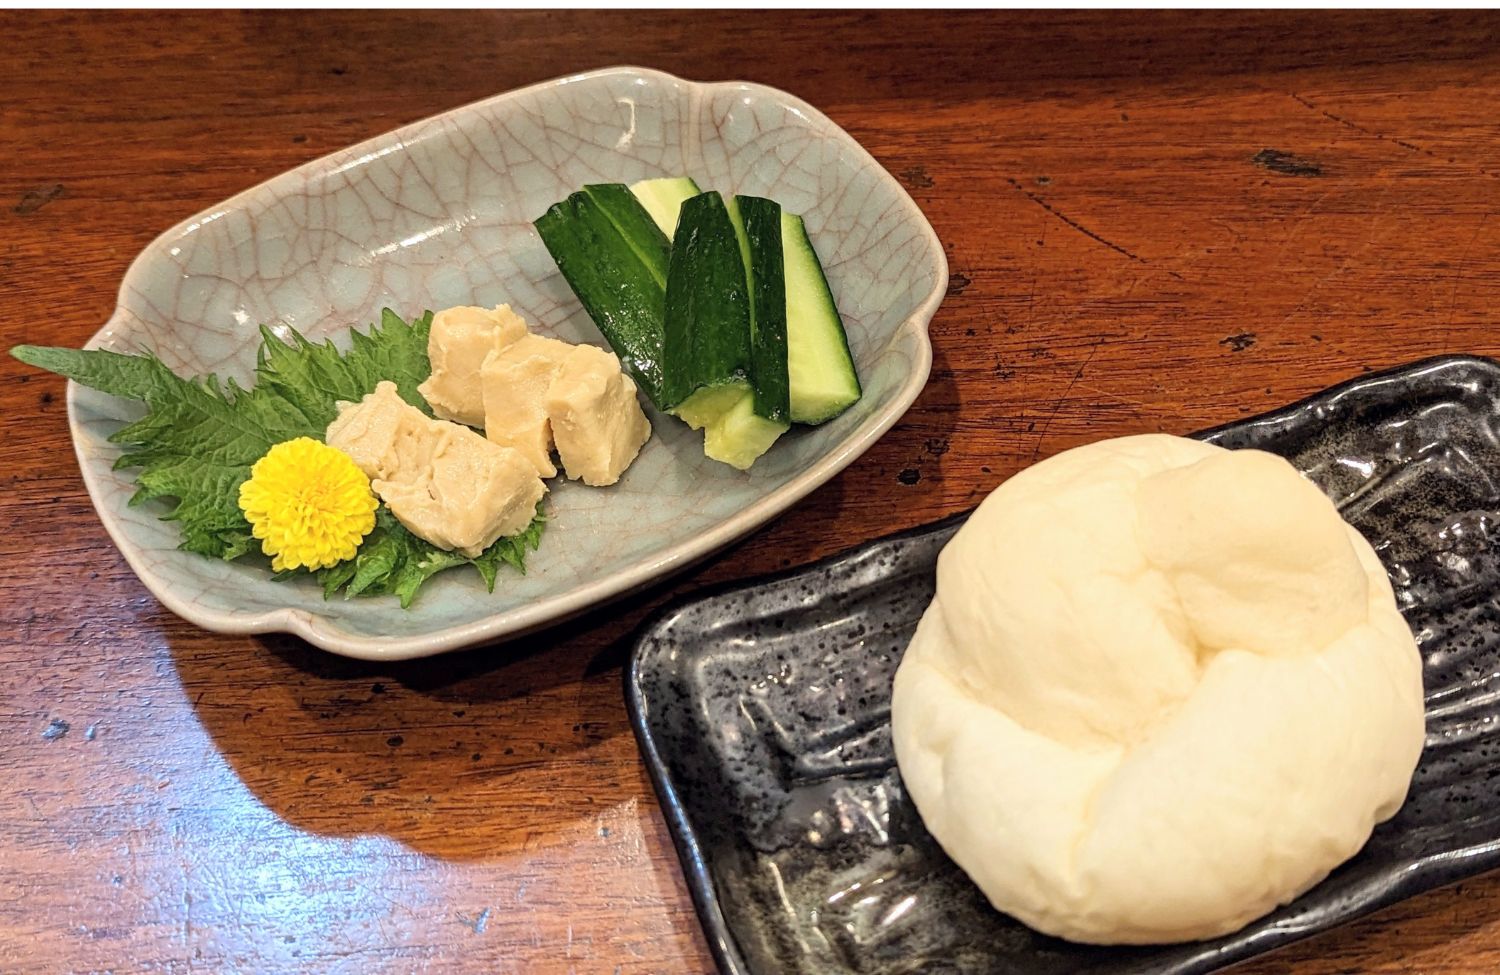 濃厚な味わいを楽しめる山うに豆腐。なめらかな舌ざわりの豆腐が、柔らかな食感のパンによく合う。